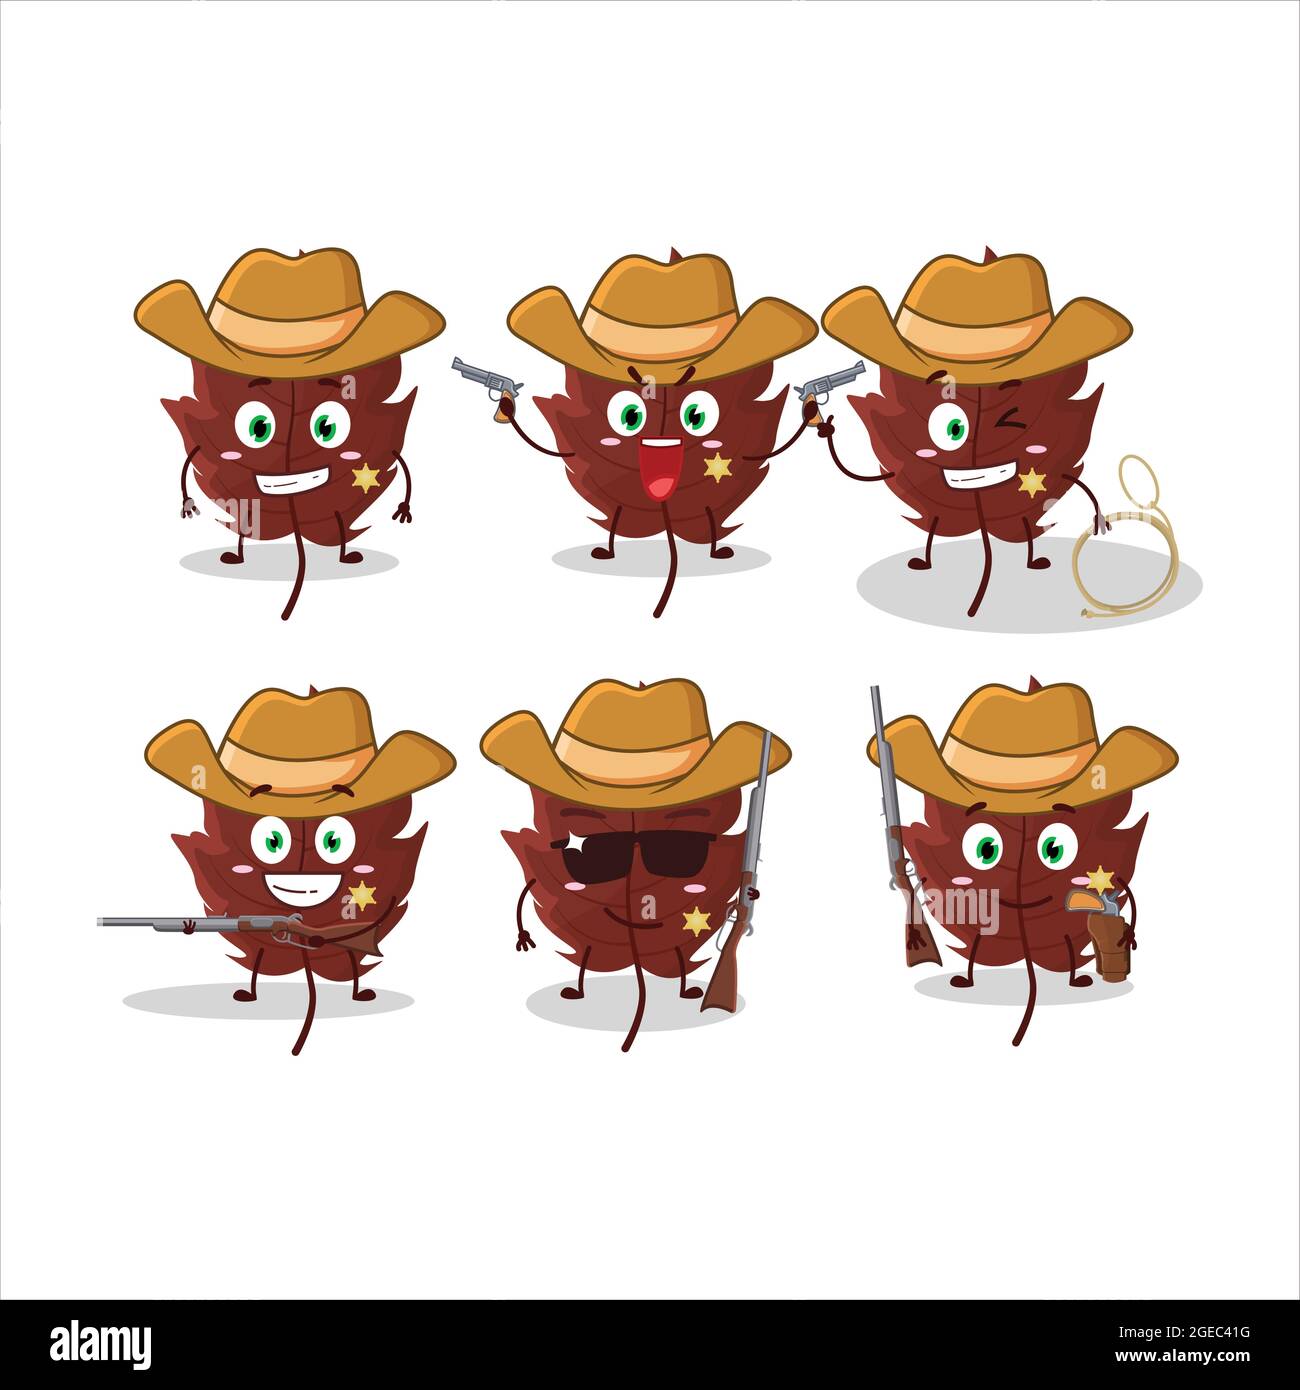 Joli chapeau de cowboy brun feuille d'automne personnage de dessin animé  avec un joli chapeau. Illustration vectorielle Image Vectorielle Stock -  Alamy